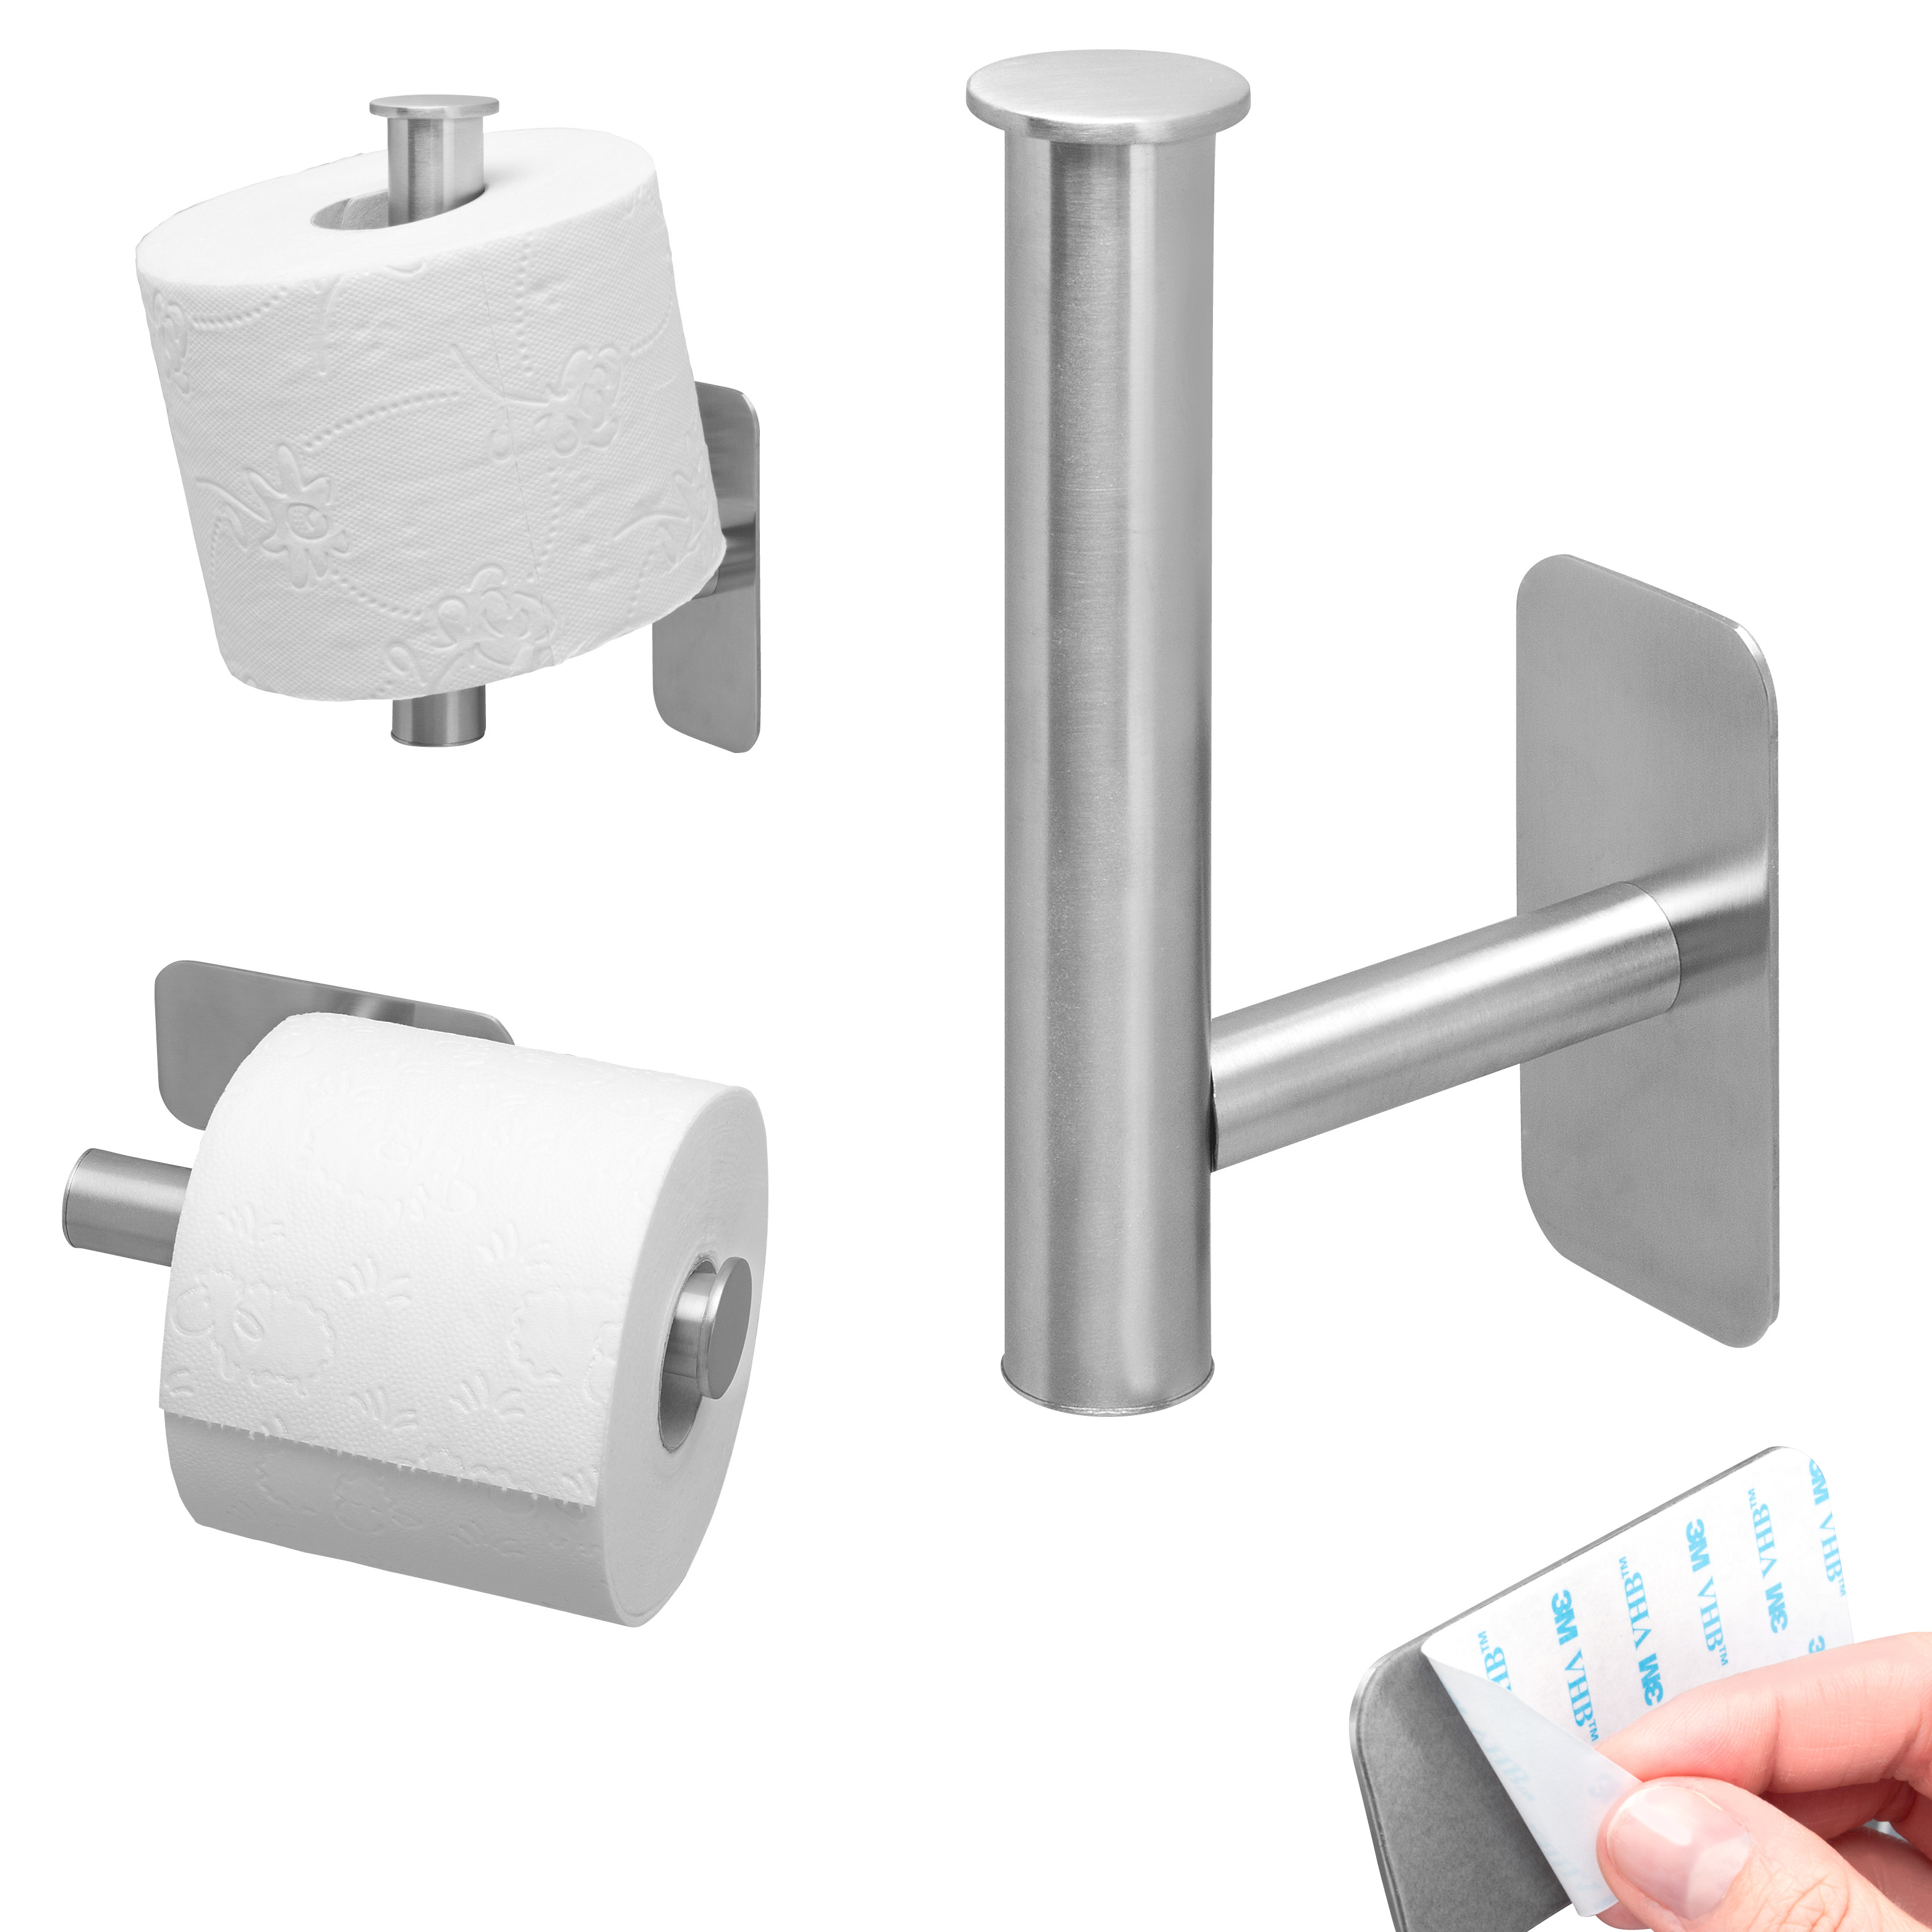 Bad-Serie PIAZZA TAPE Toilettenpapierhalter/Ersatzrollenhalter 2in1 selbstklebend aus Edelstahl